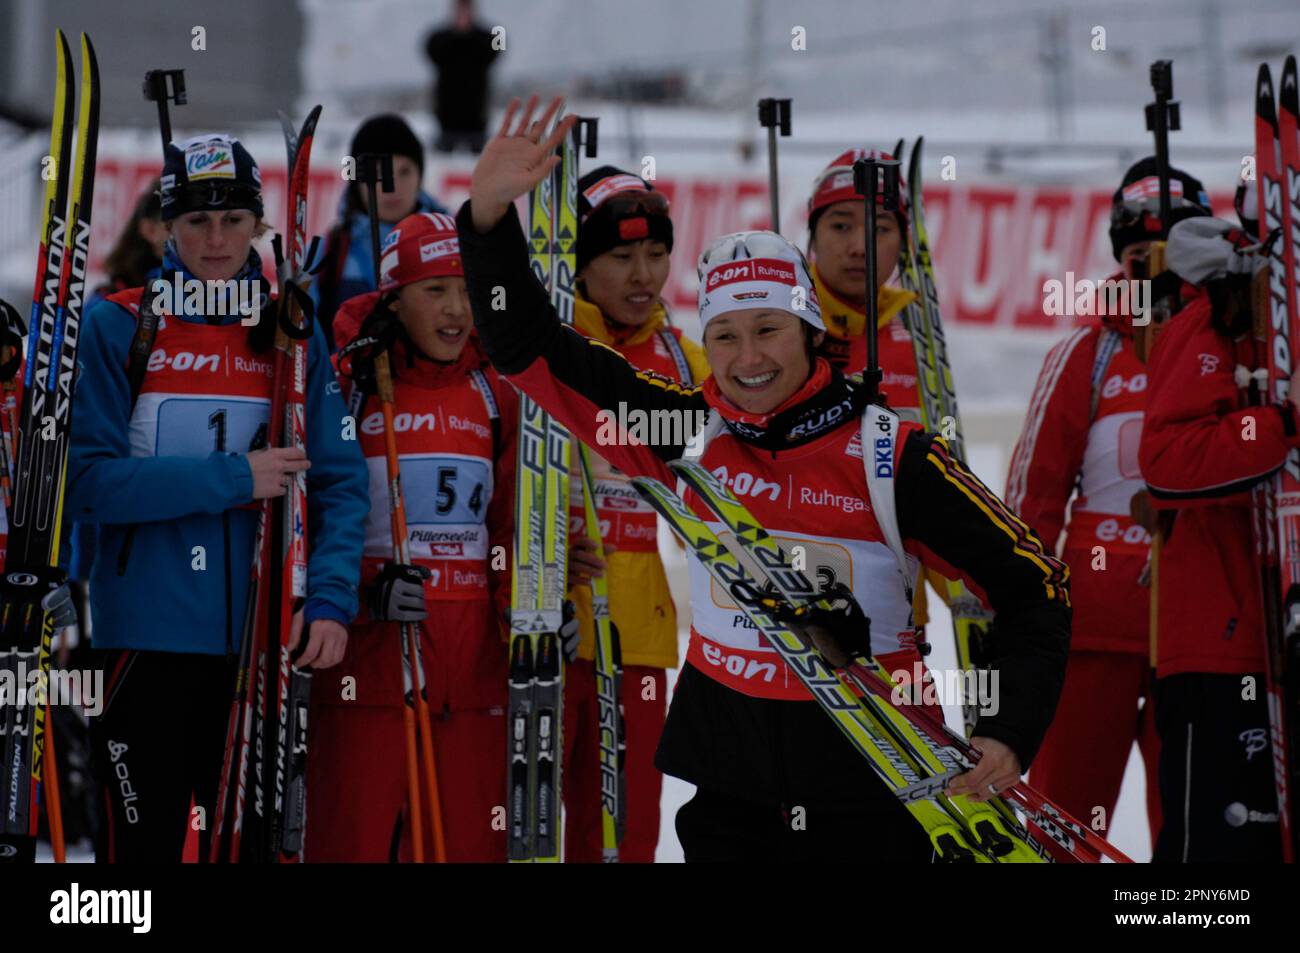 Simone DENKINGER, Geste winkt bei Siegerehrung, Biathlon Welt Cup in Hochfilzen 4 x 6KM Staffel der Frauen 9.12.2007, Staffel Stock Photo